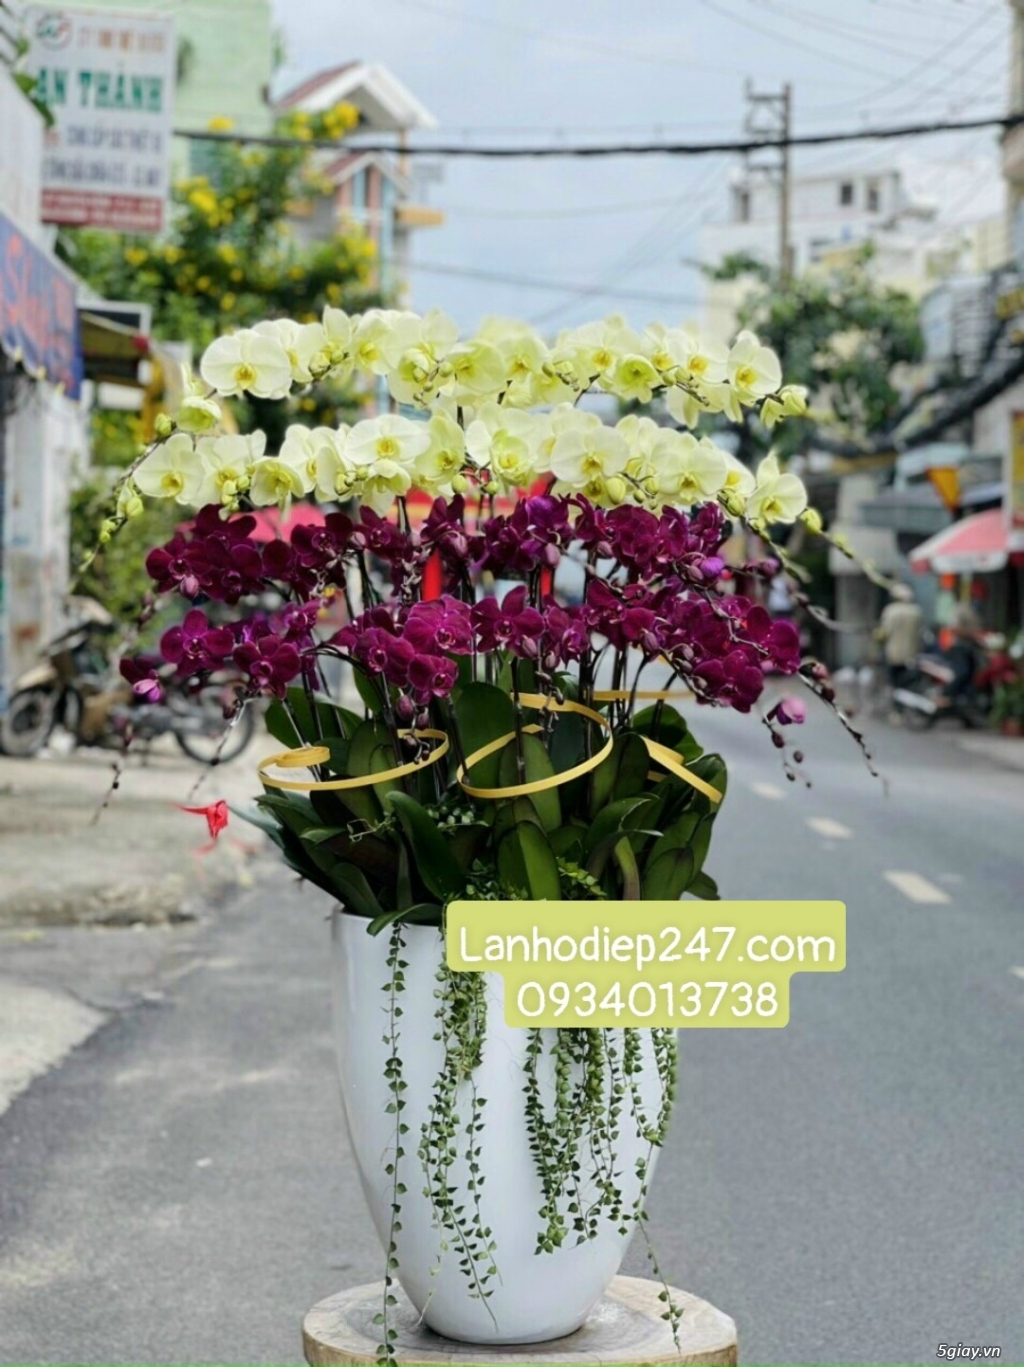 Shop hoa tươi lan hồ điệp tại quận 7 tphcm 0934013738 - 14